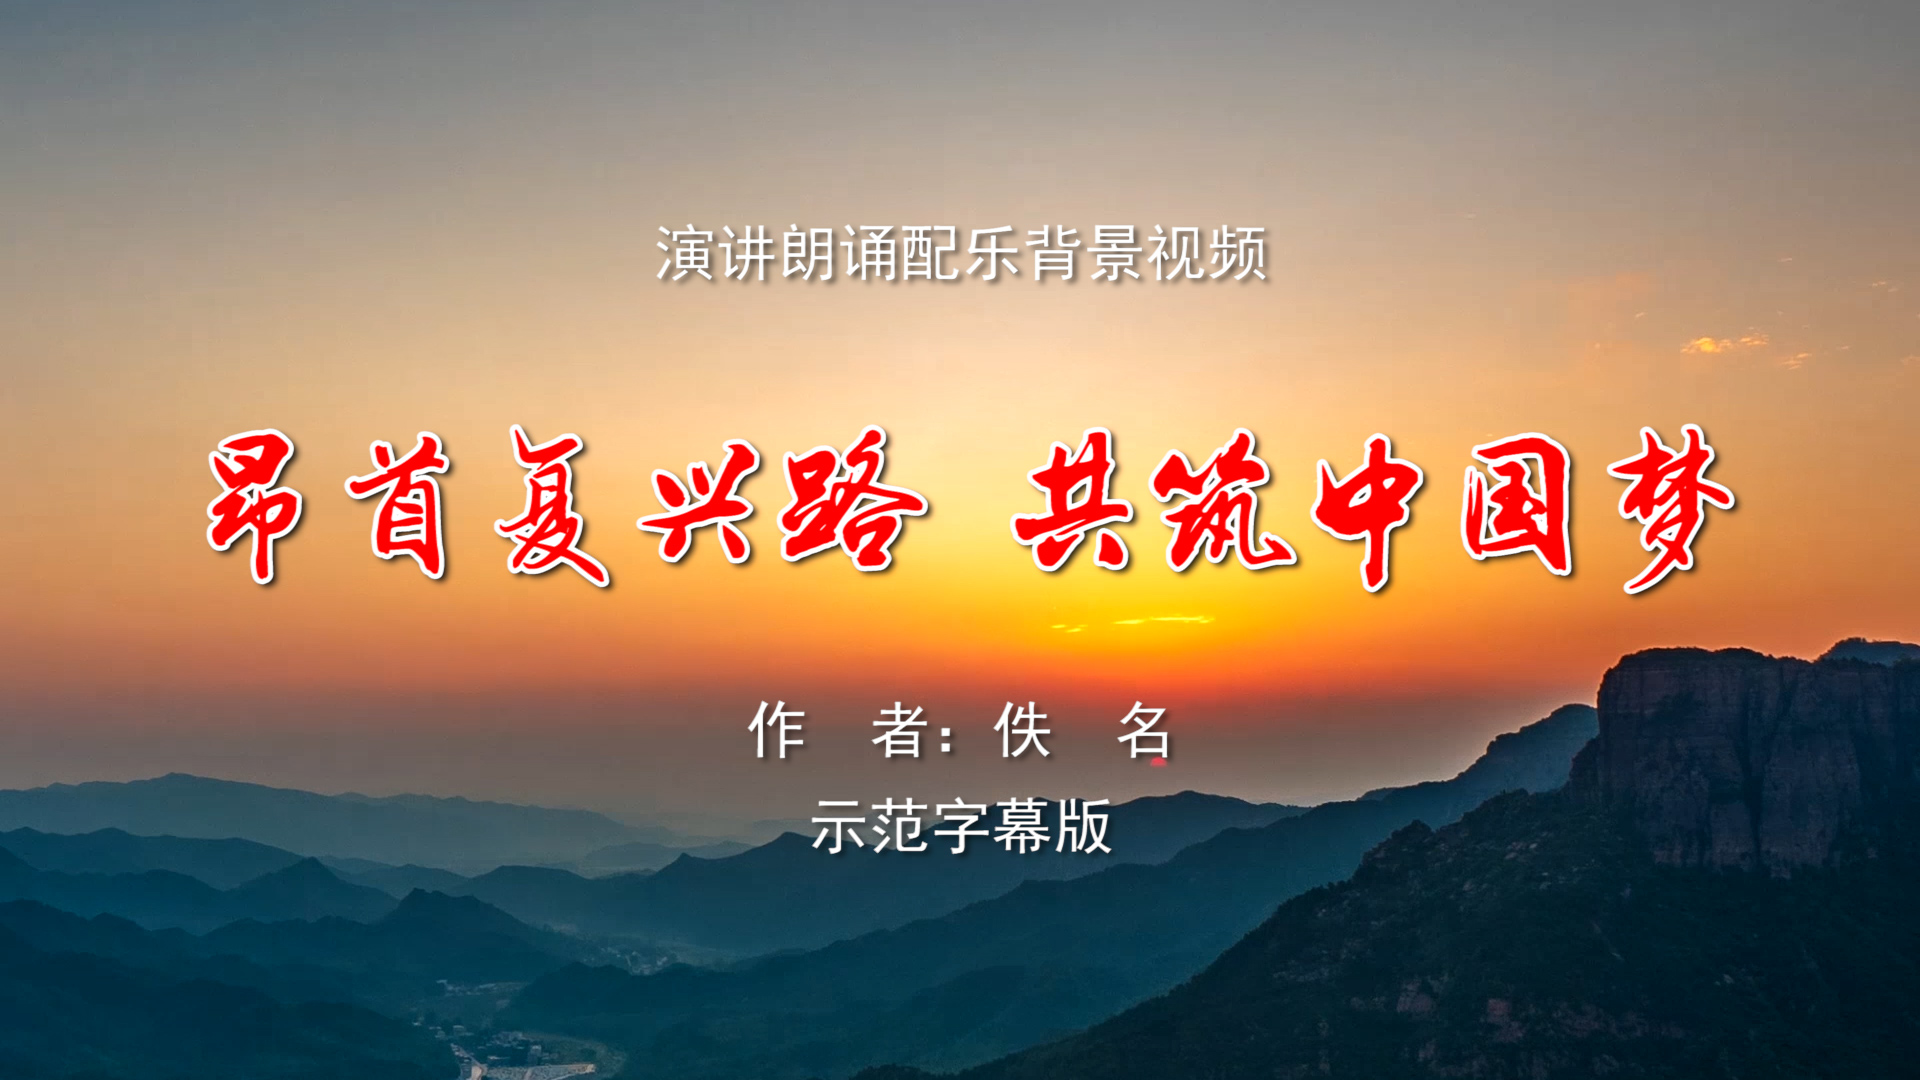 昂首复兴路 共筑中国梦 诗歌朗诵配乐伴奏LED背景大屏幕视频